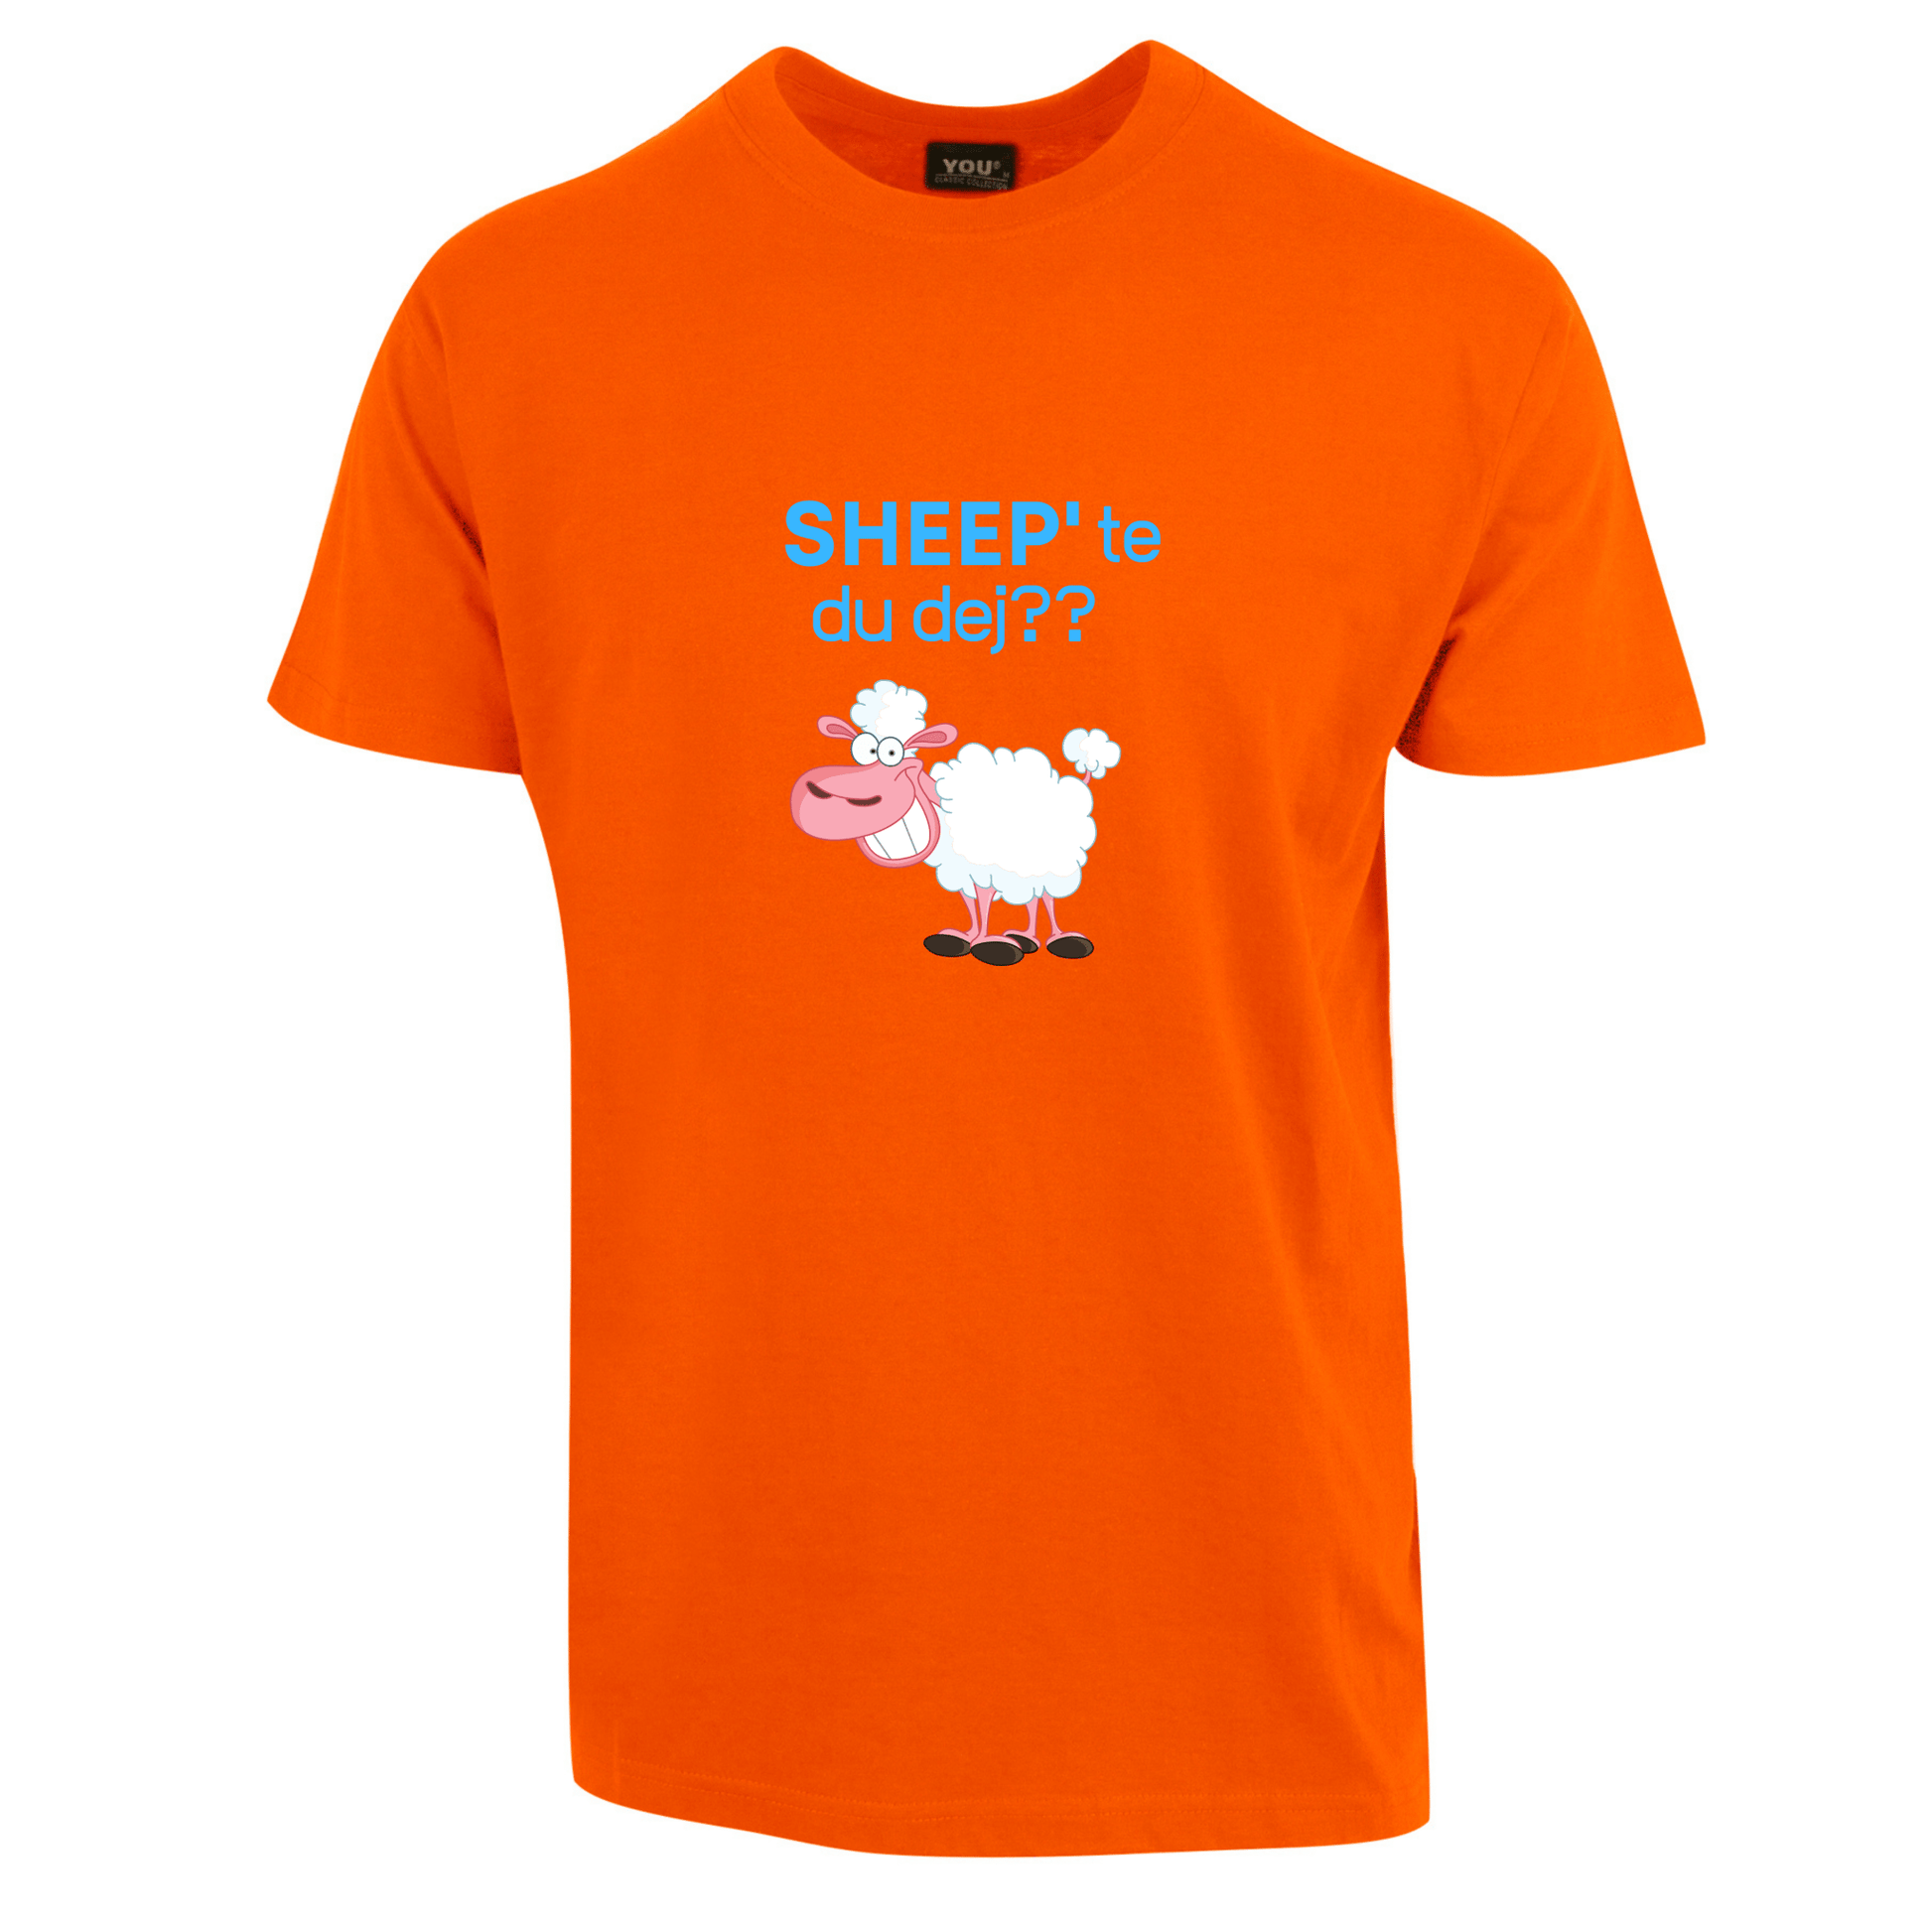 SHEEP'te du dej Barne t-skjorte - DoUdare